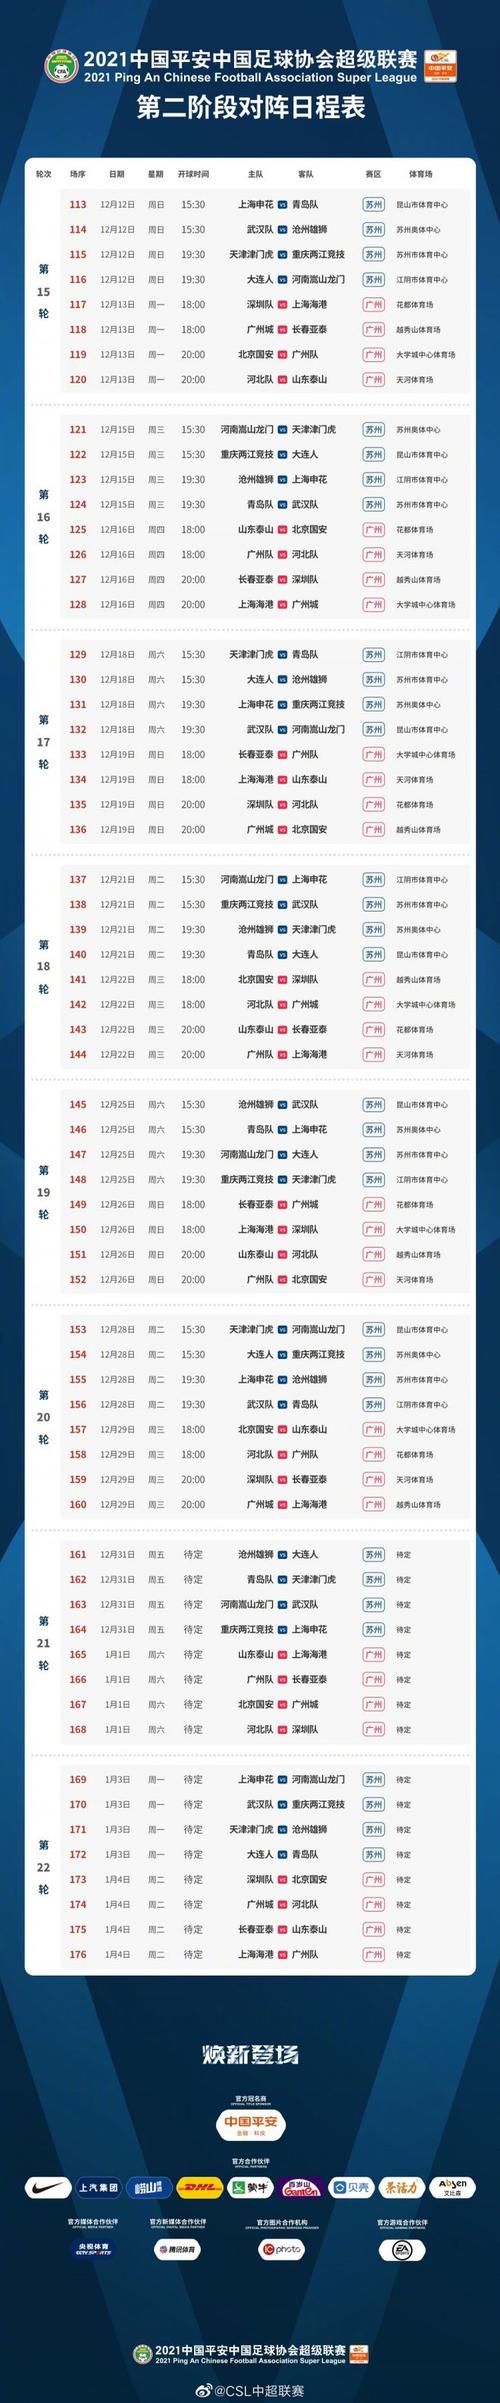 中超联赛赛程表2016